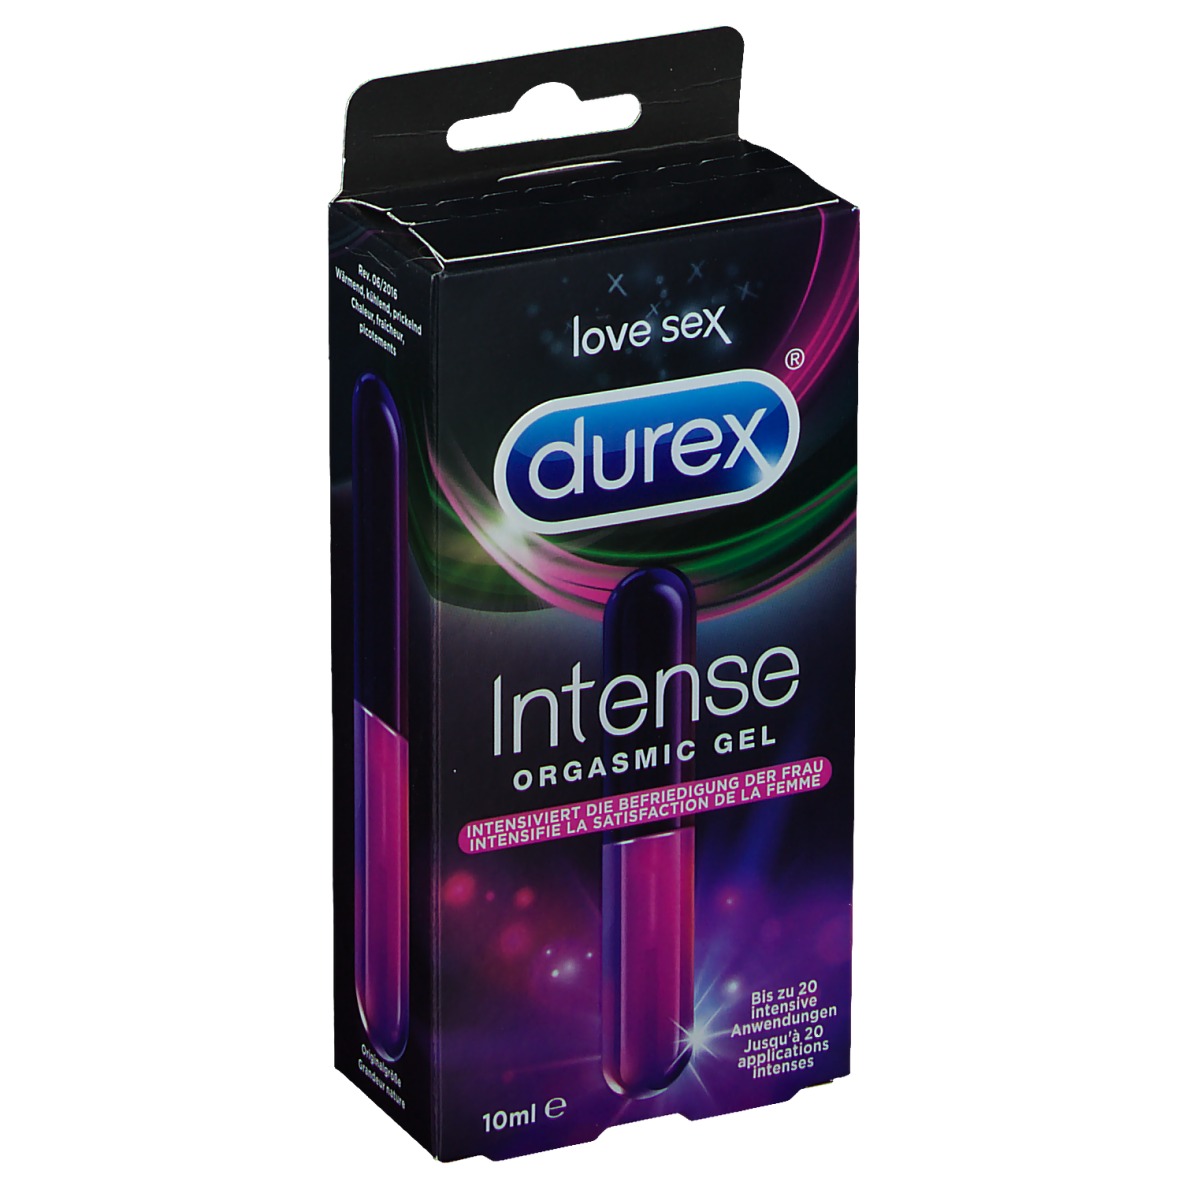 Durex Intense Orgasmic Gel Ml Shop Apotheke At